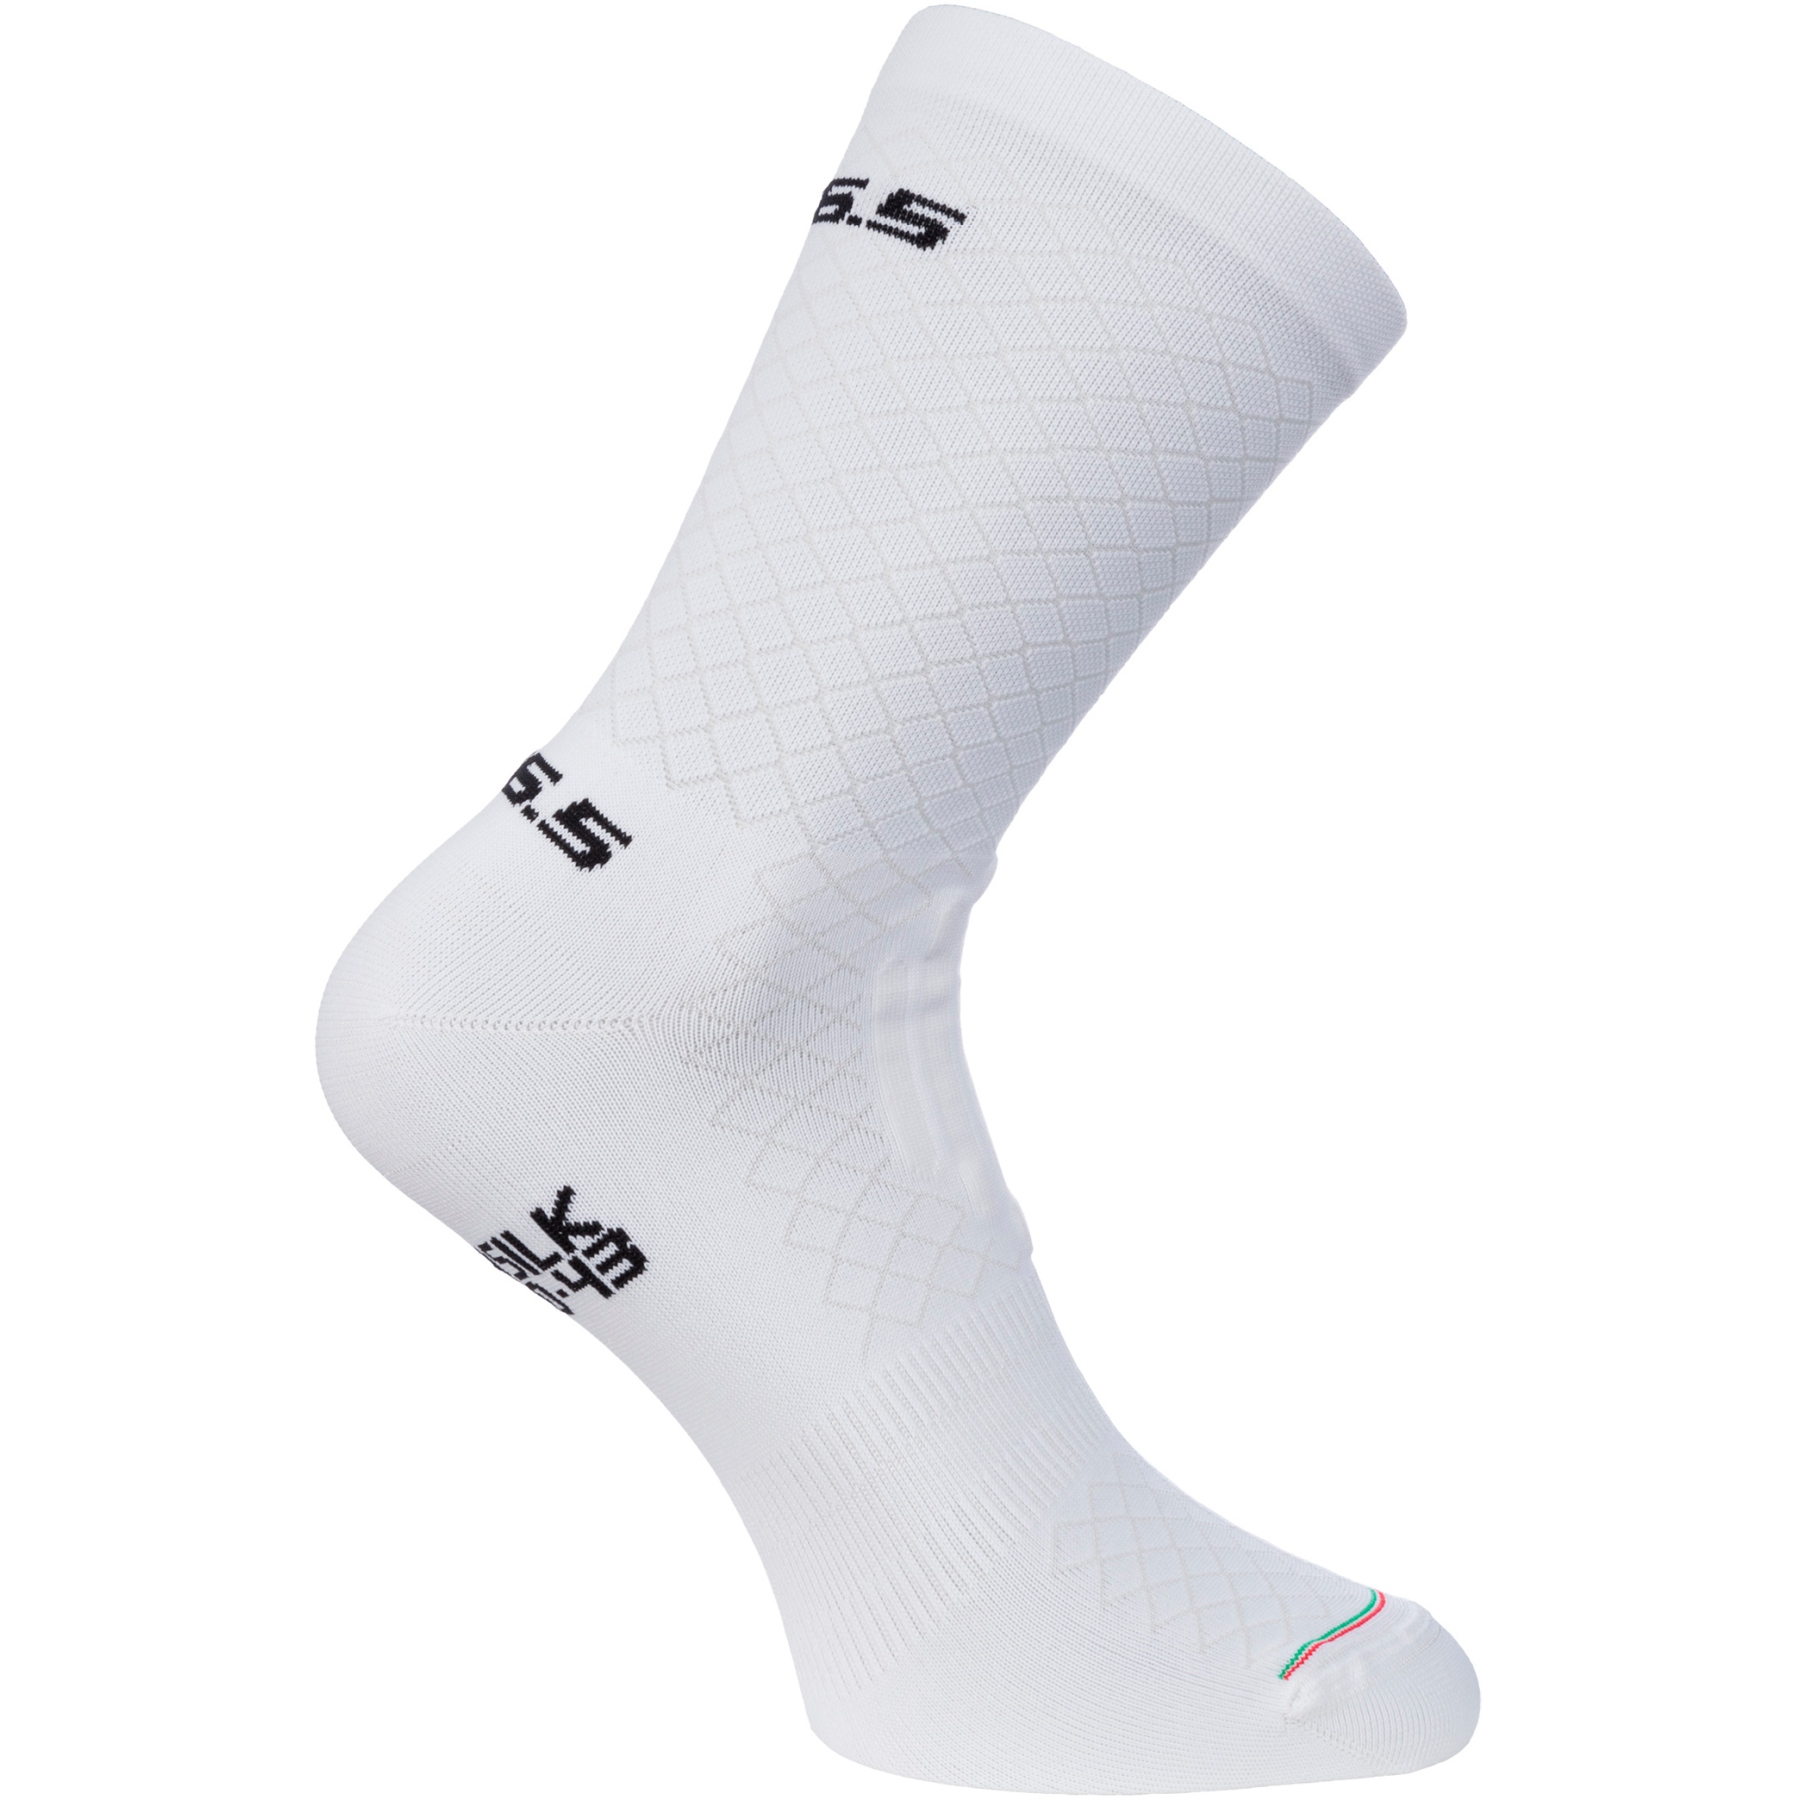 Picture of Q36.5 Leggera Socks - white